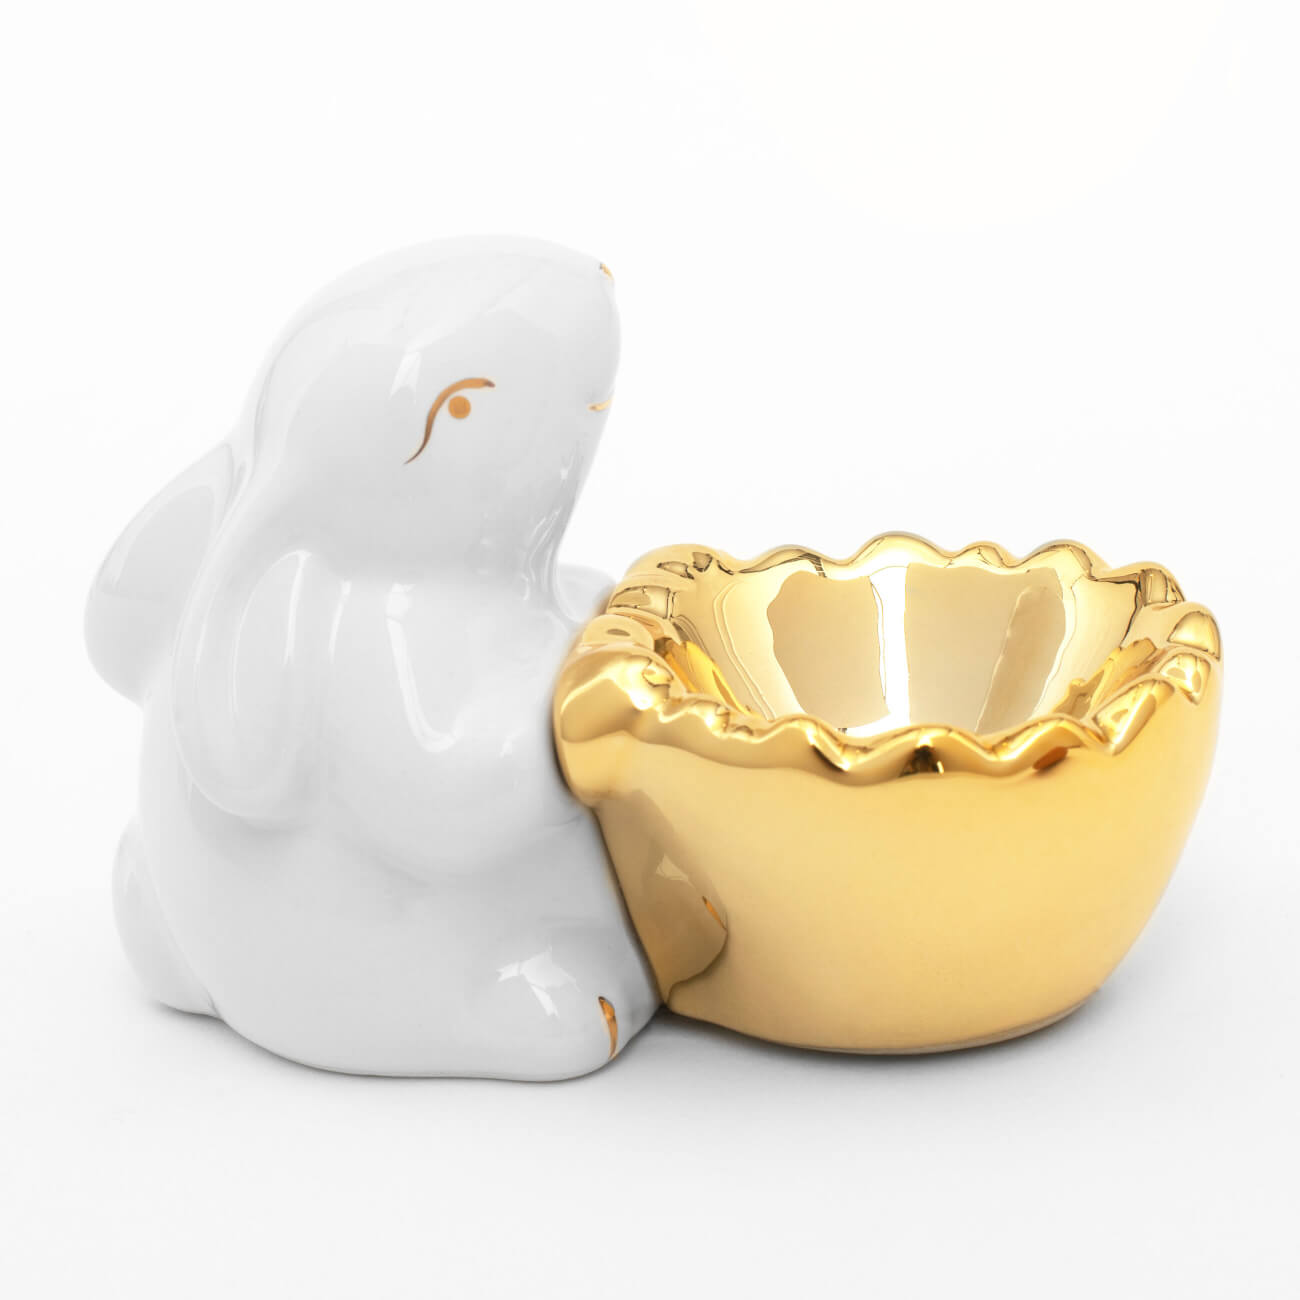 Подставка для яйца, 11 см, керамика, бело-золотистая, Кролик со скорлупой, Easter gold подставка для яйца 3 отд 21х10 см керамика бело золотистая кролики easter gold